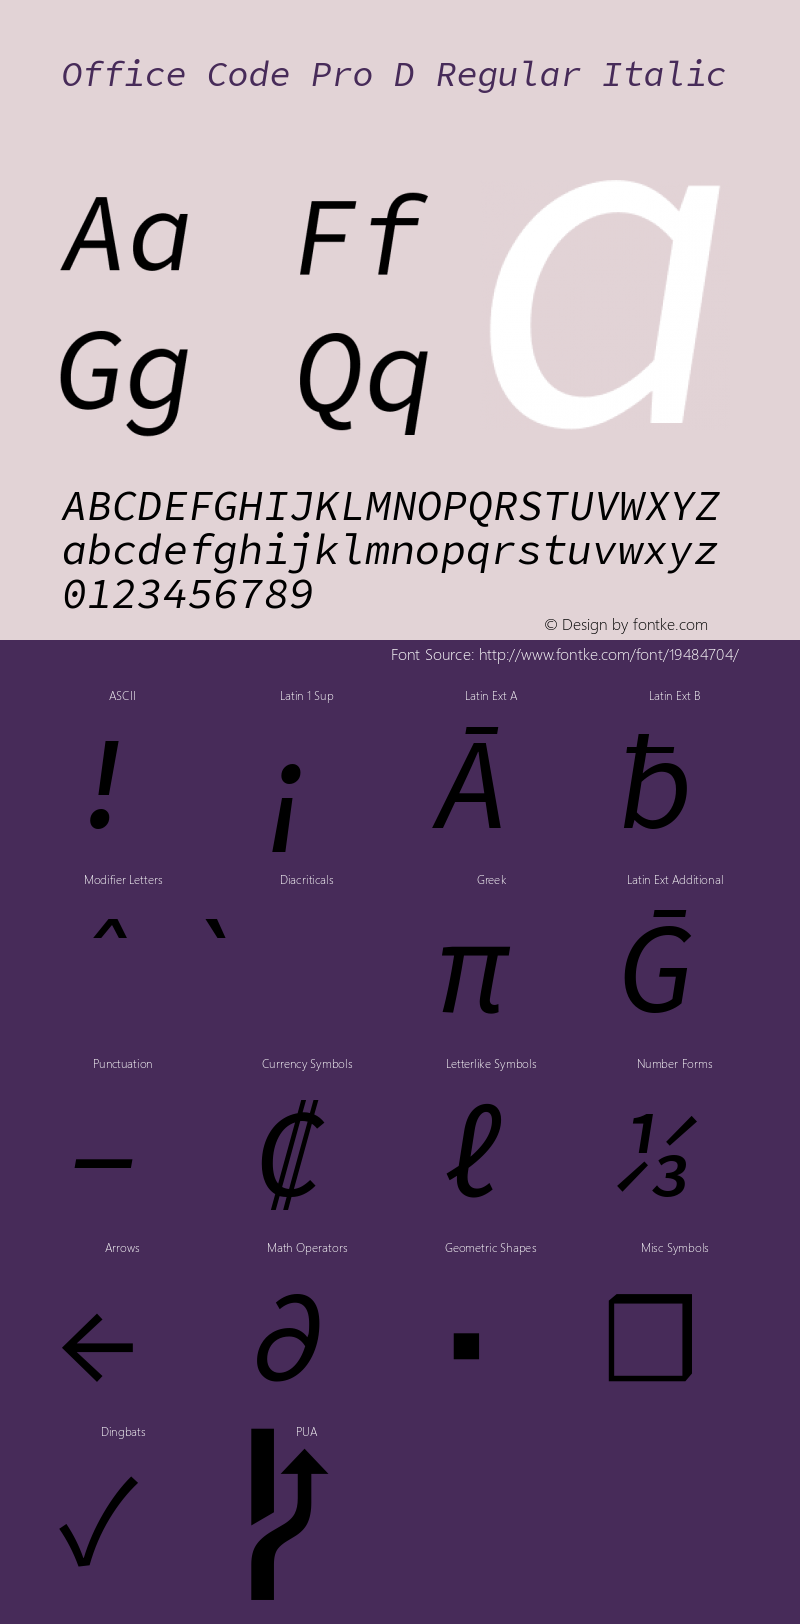 Office Code Pro D Regular Italic Version 1.004 Font Sample